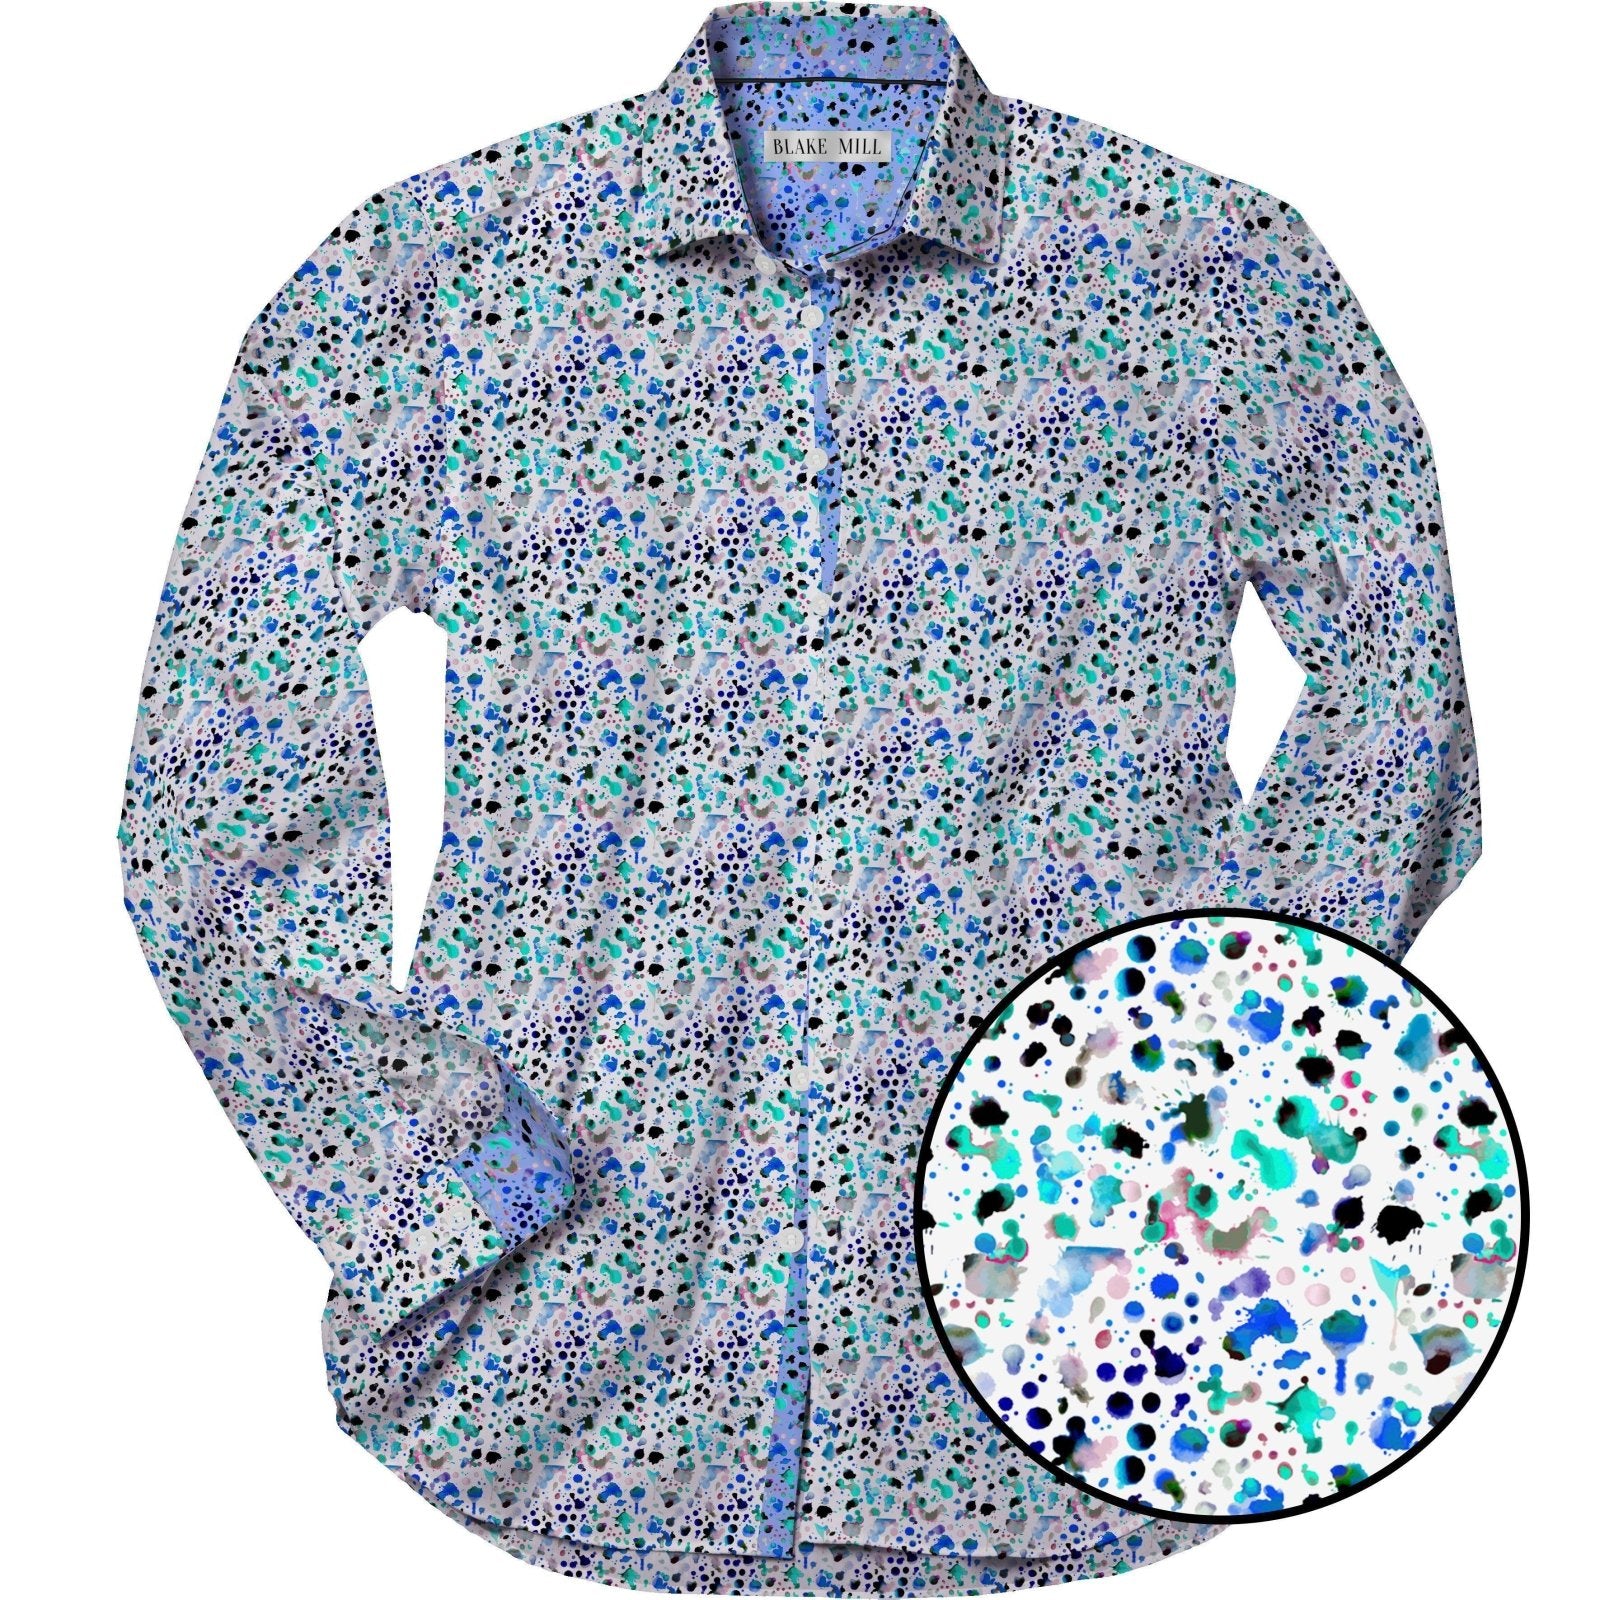 Watercolour Shirt - Blake Mill